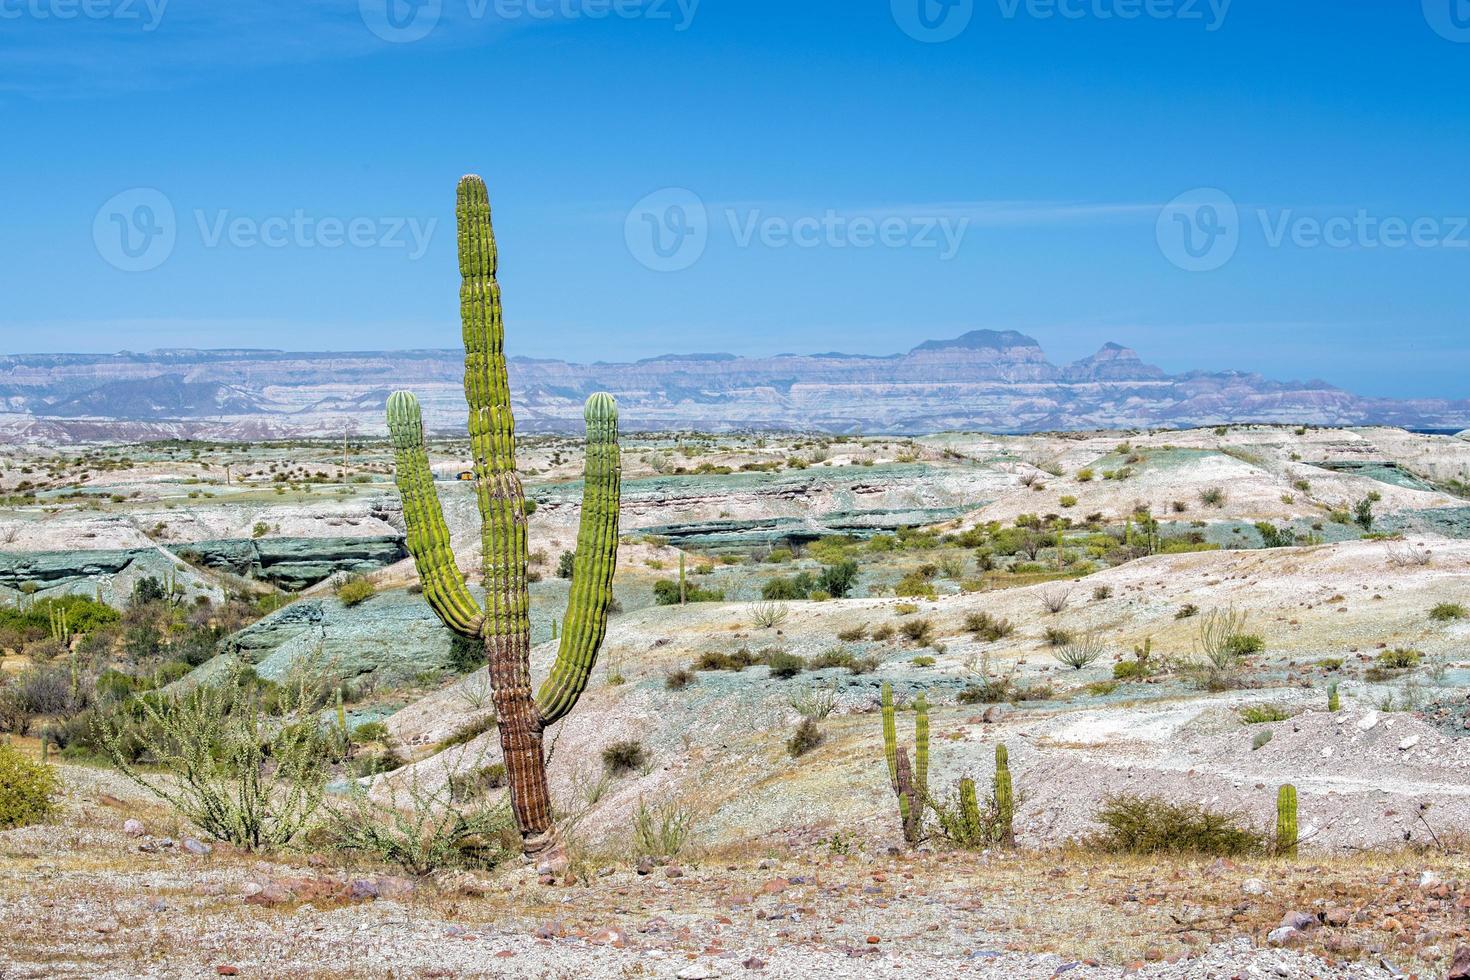 cacto gigante do deserto da califórnia close-up foto